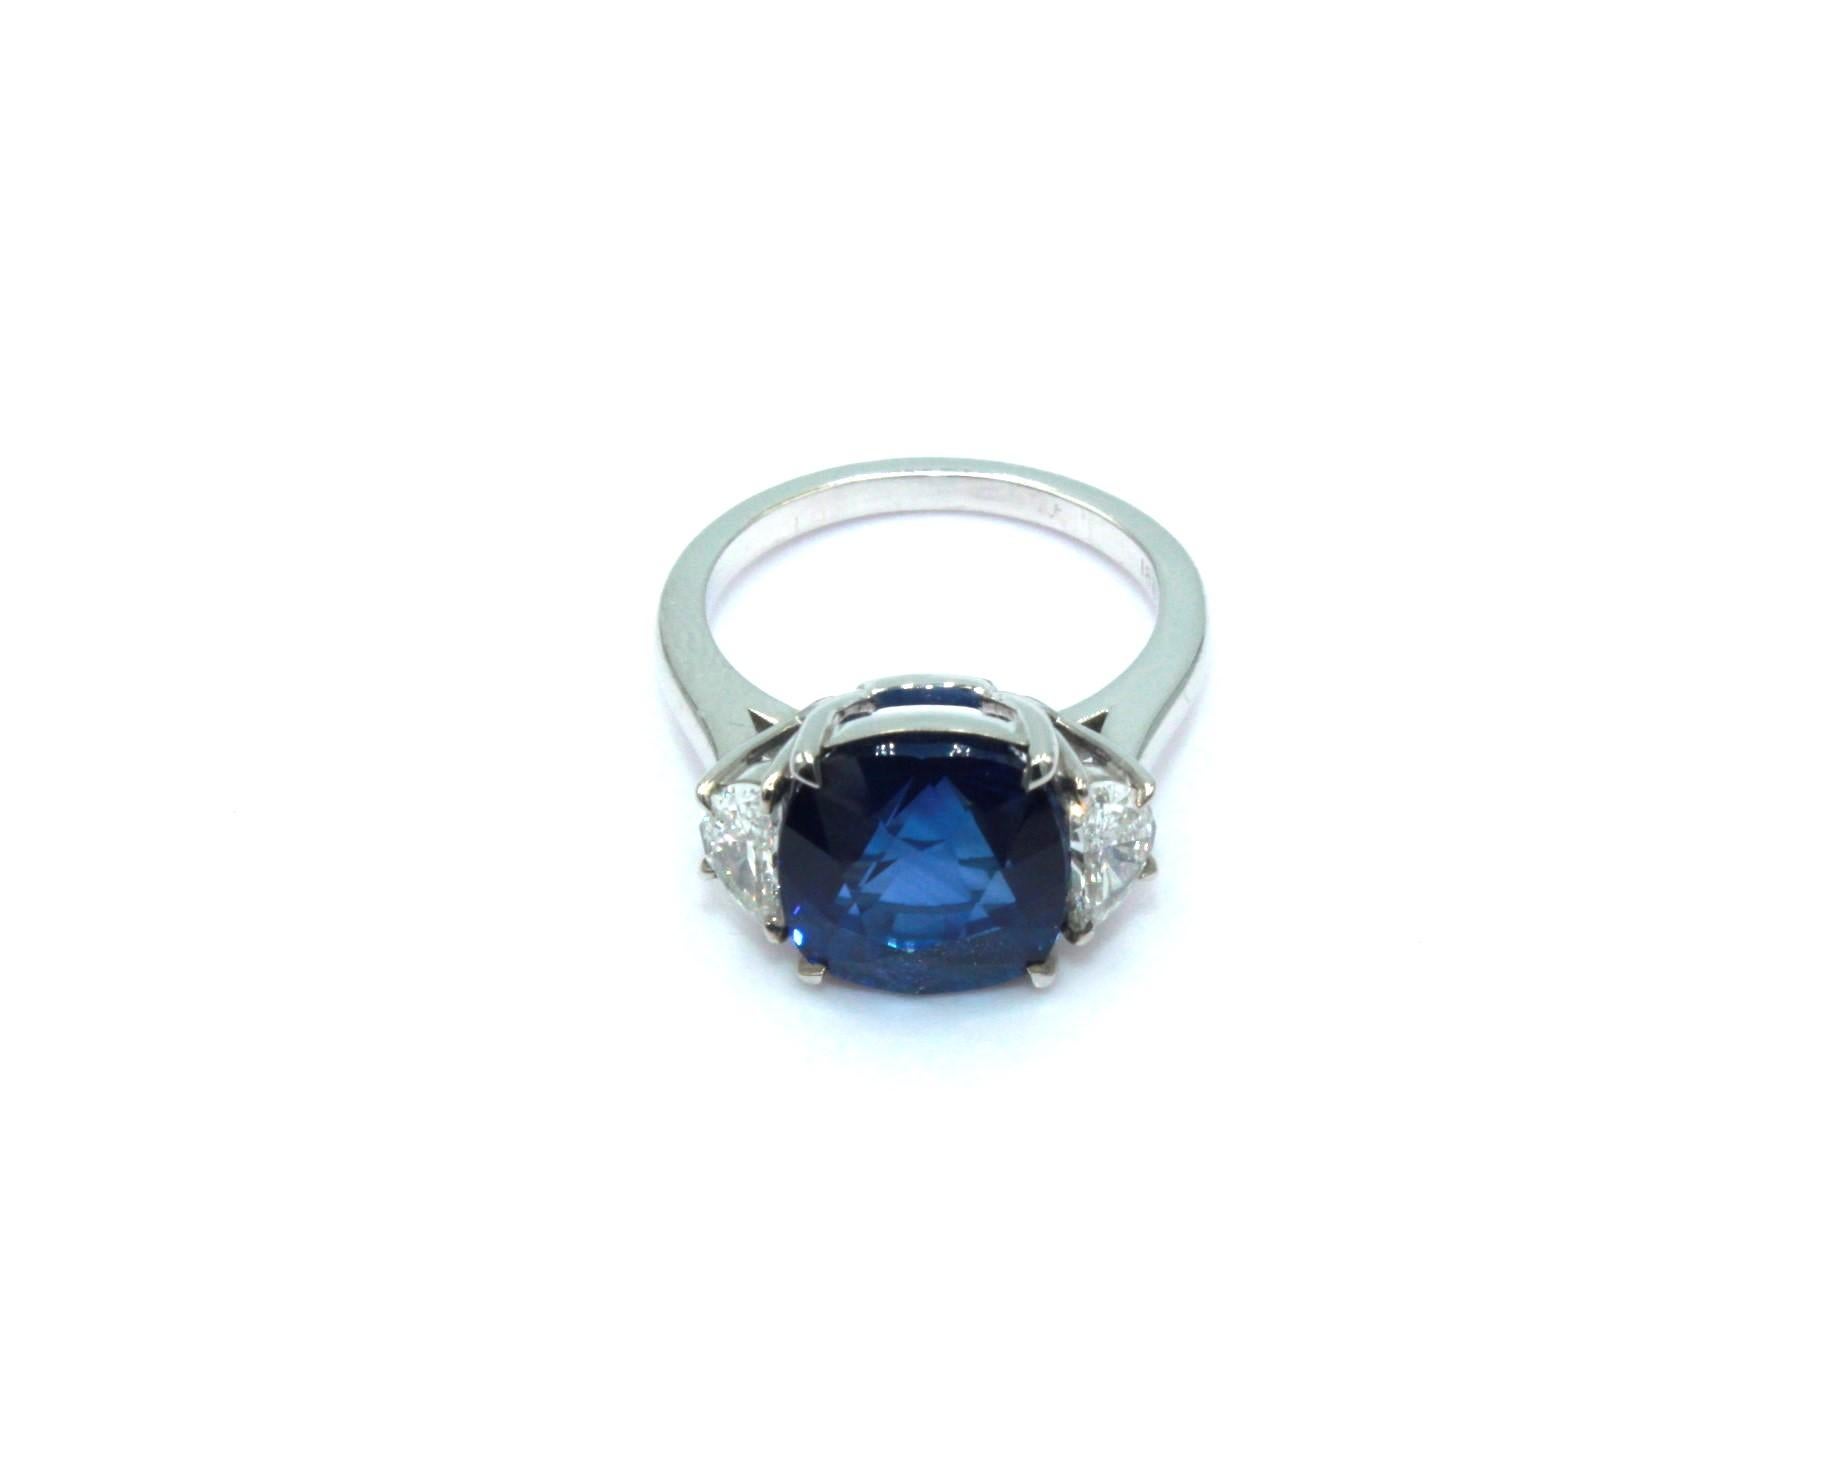 8,0 Karat Ceylon-Saphir, besetzt mit 2 halbmondförmigen Diamanten mit einem Gesamtgewicht von 0,64 Karat. 

Dieser atemberaubende Saphir-Diamant-Ring wird Ihre Eleganz und Einzigartigkeit unterstreichen. 

Artikel-Details:
- Art: Ring
- Metall: 18K